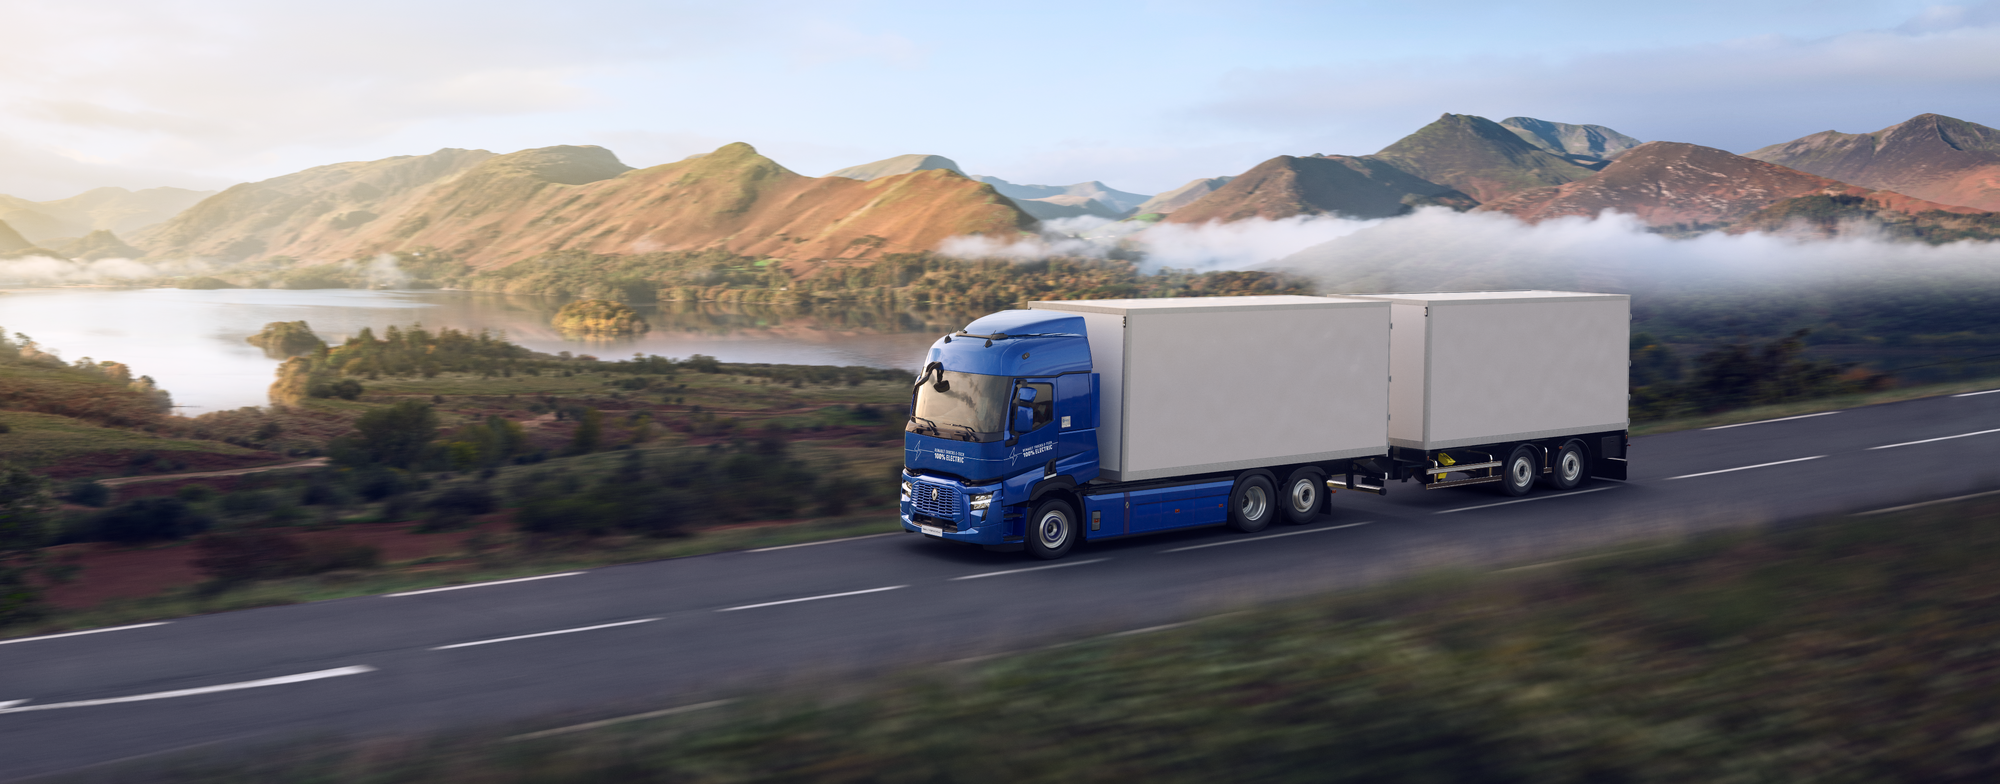 Bluekens-Renault-Trucks-E-tech-T-afstand